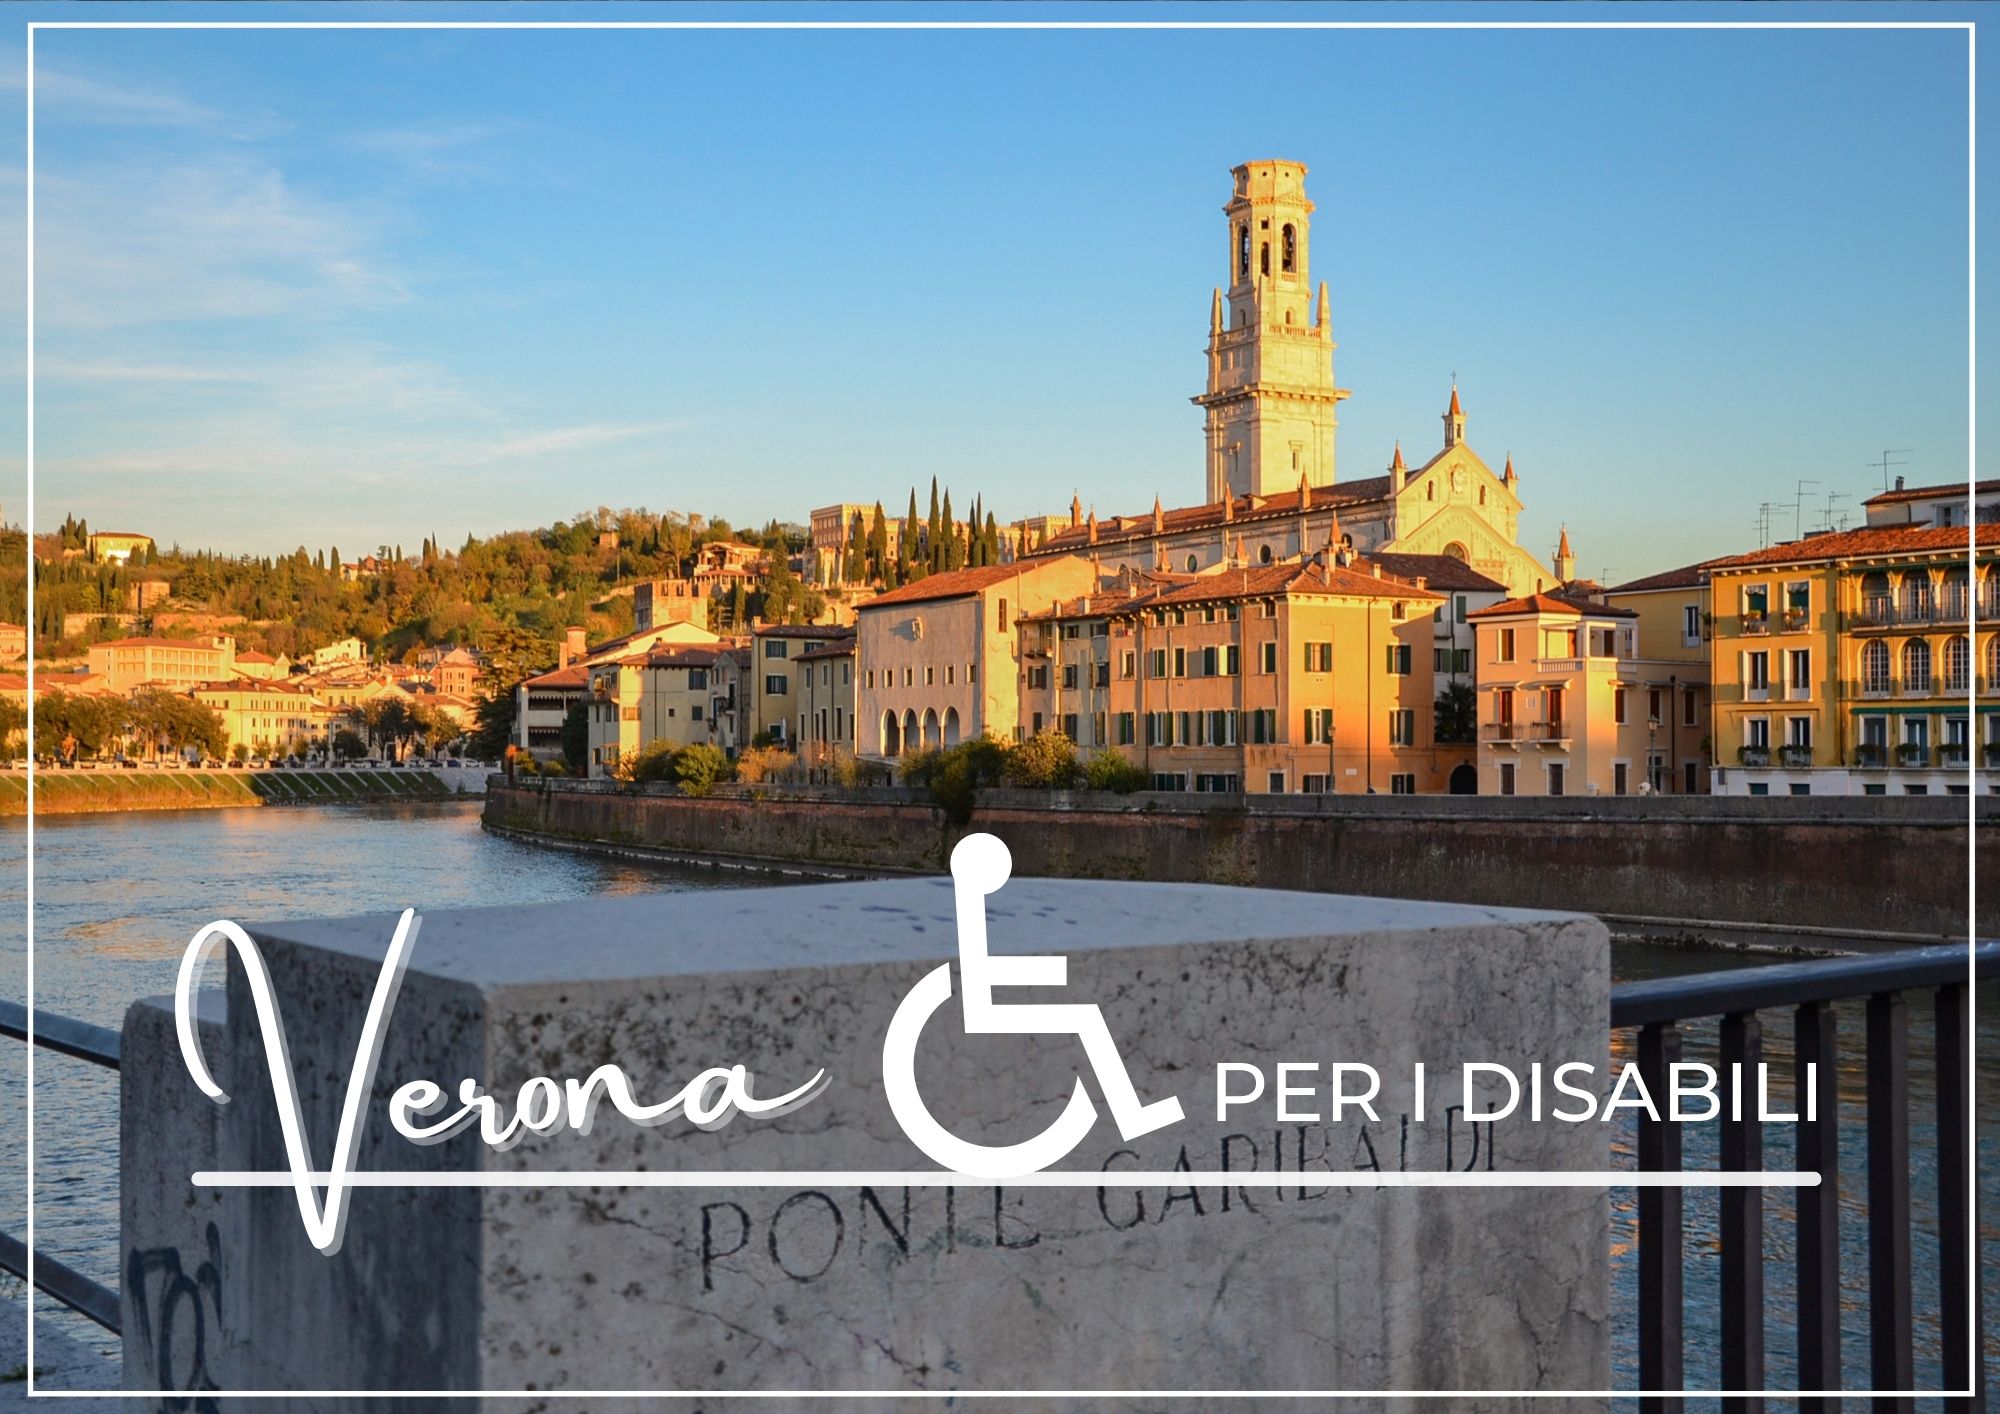 Verona per i disabili